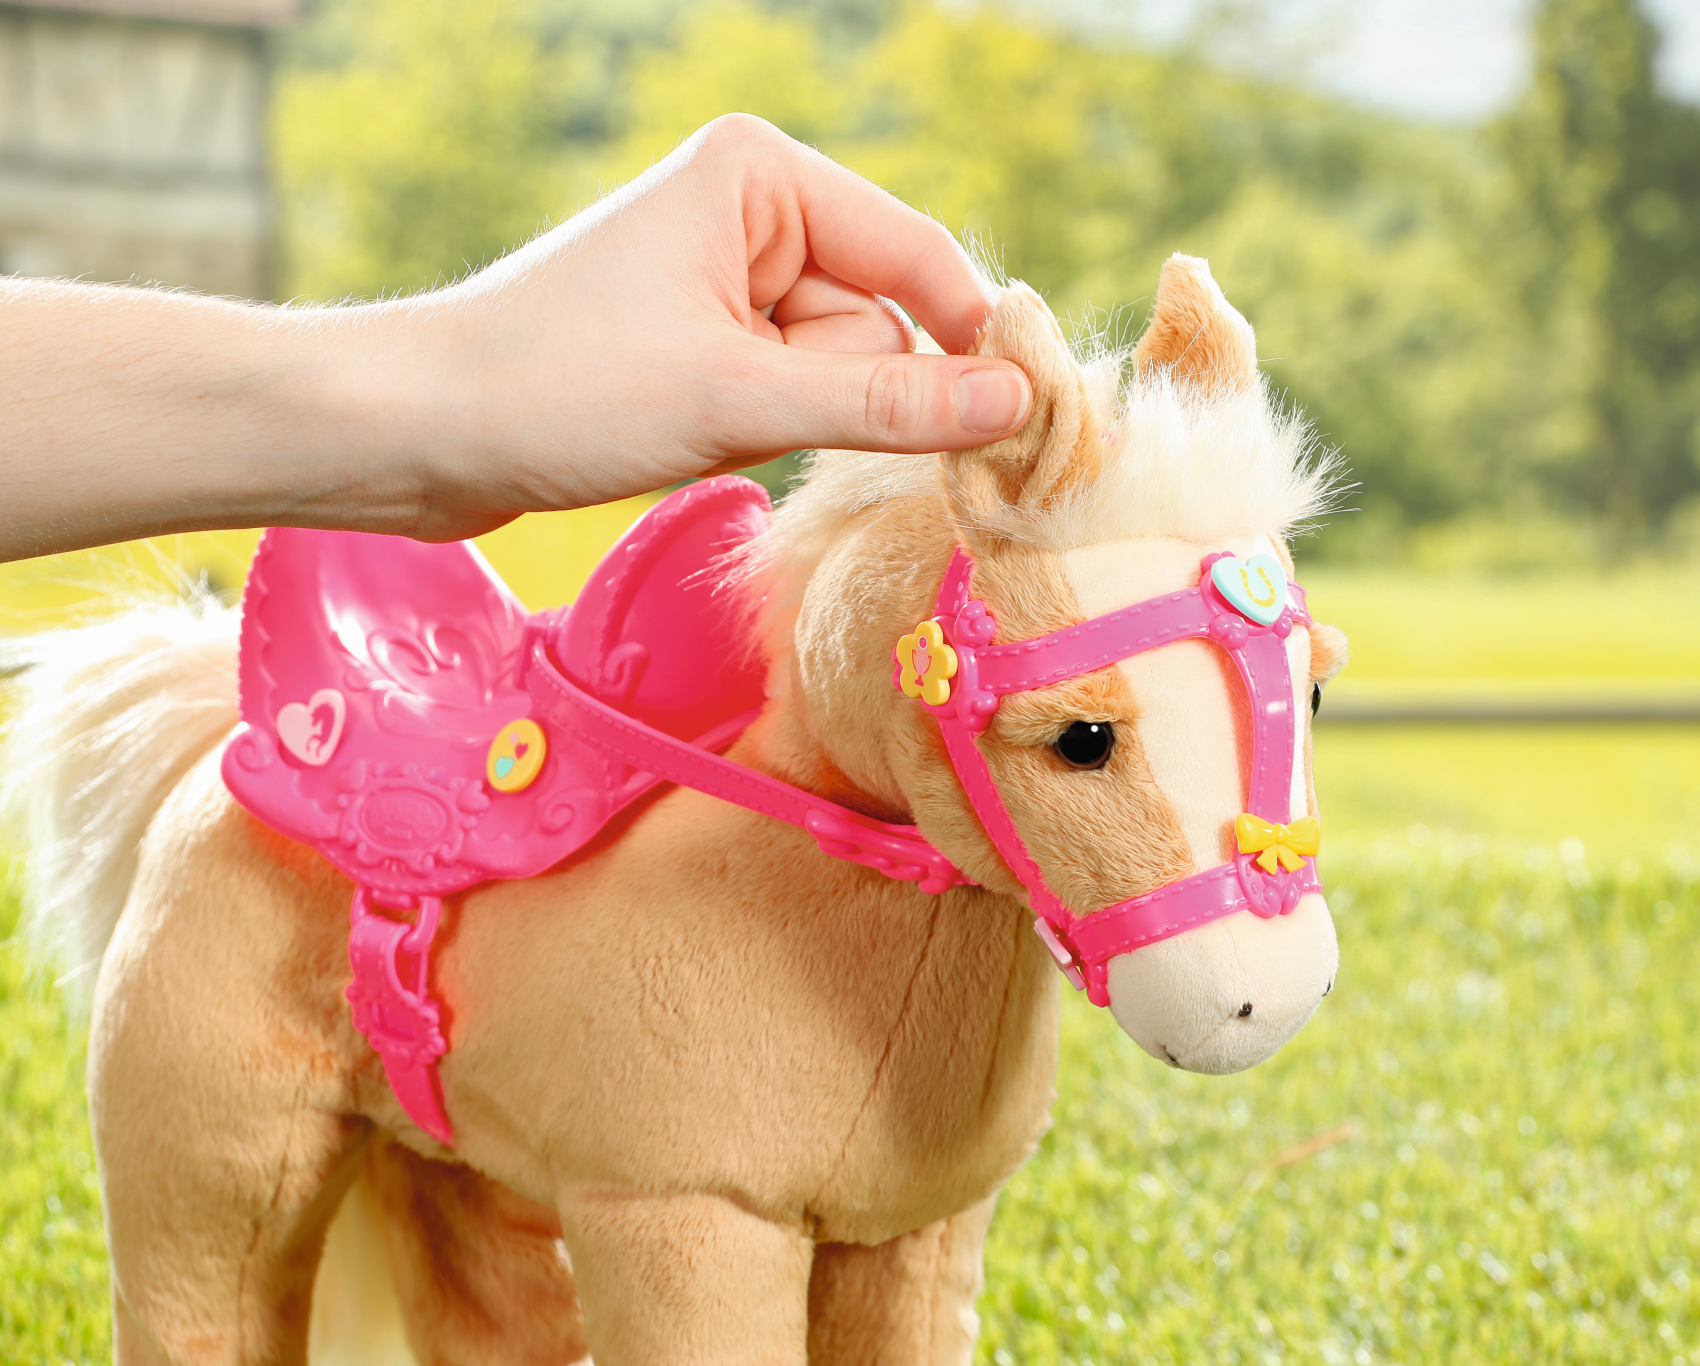 Baby born my cute horse - giocattolo per bambini - facile da maneggiare per mani piccole - promuove l'empatia e le abilità sociali - include sella, briglie e spille - 